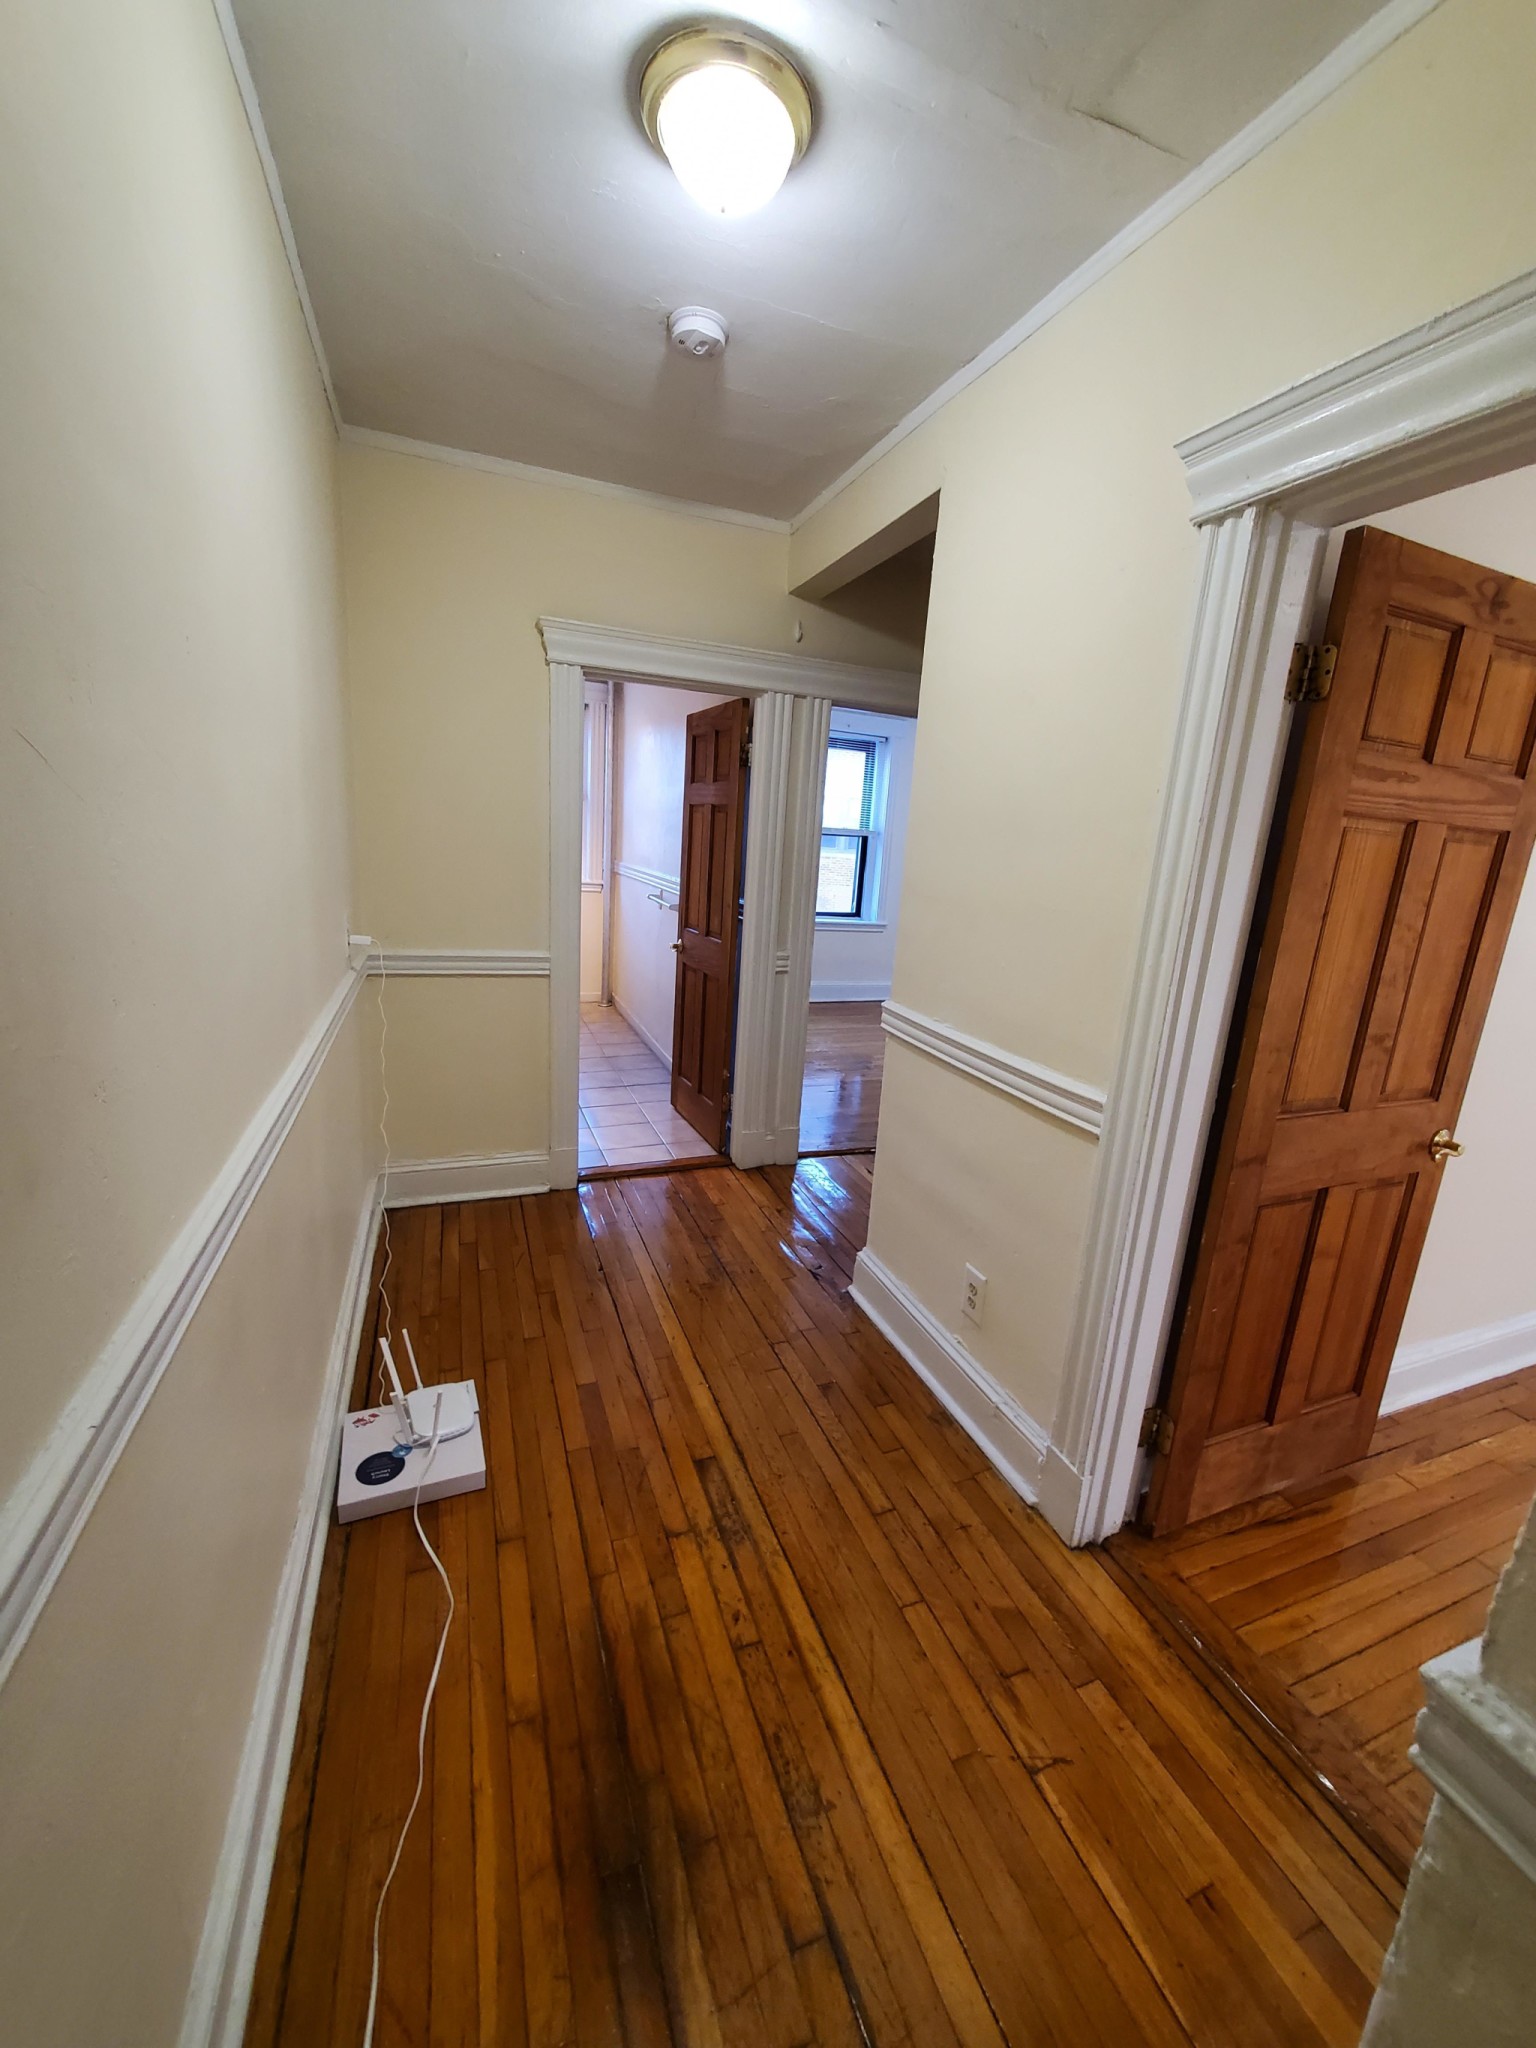 Photos of apartment on Beacon St.,Boston MA 02115